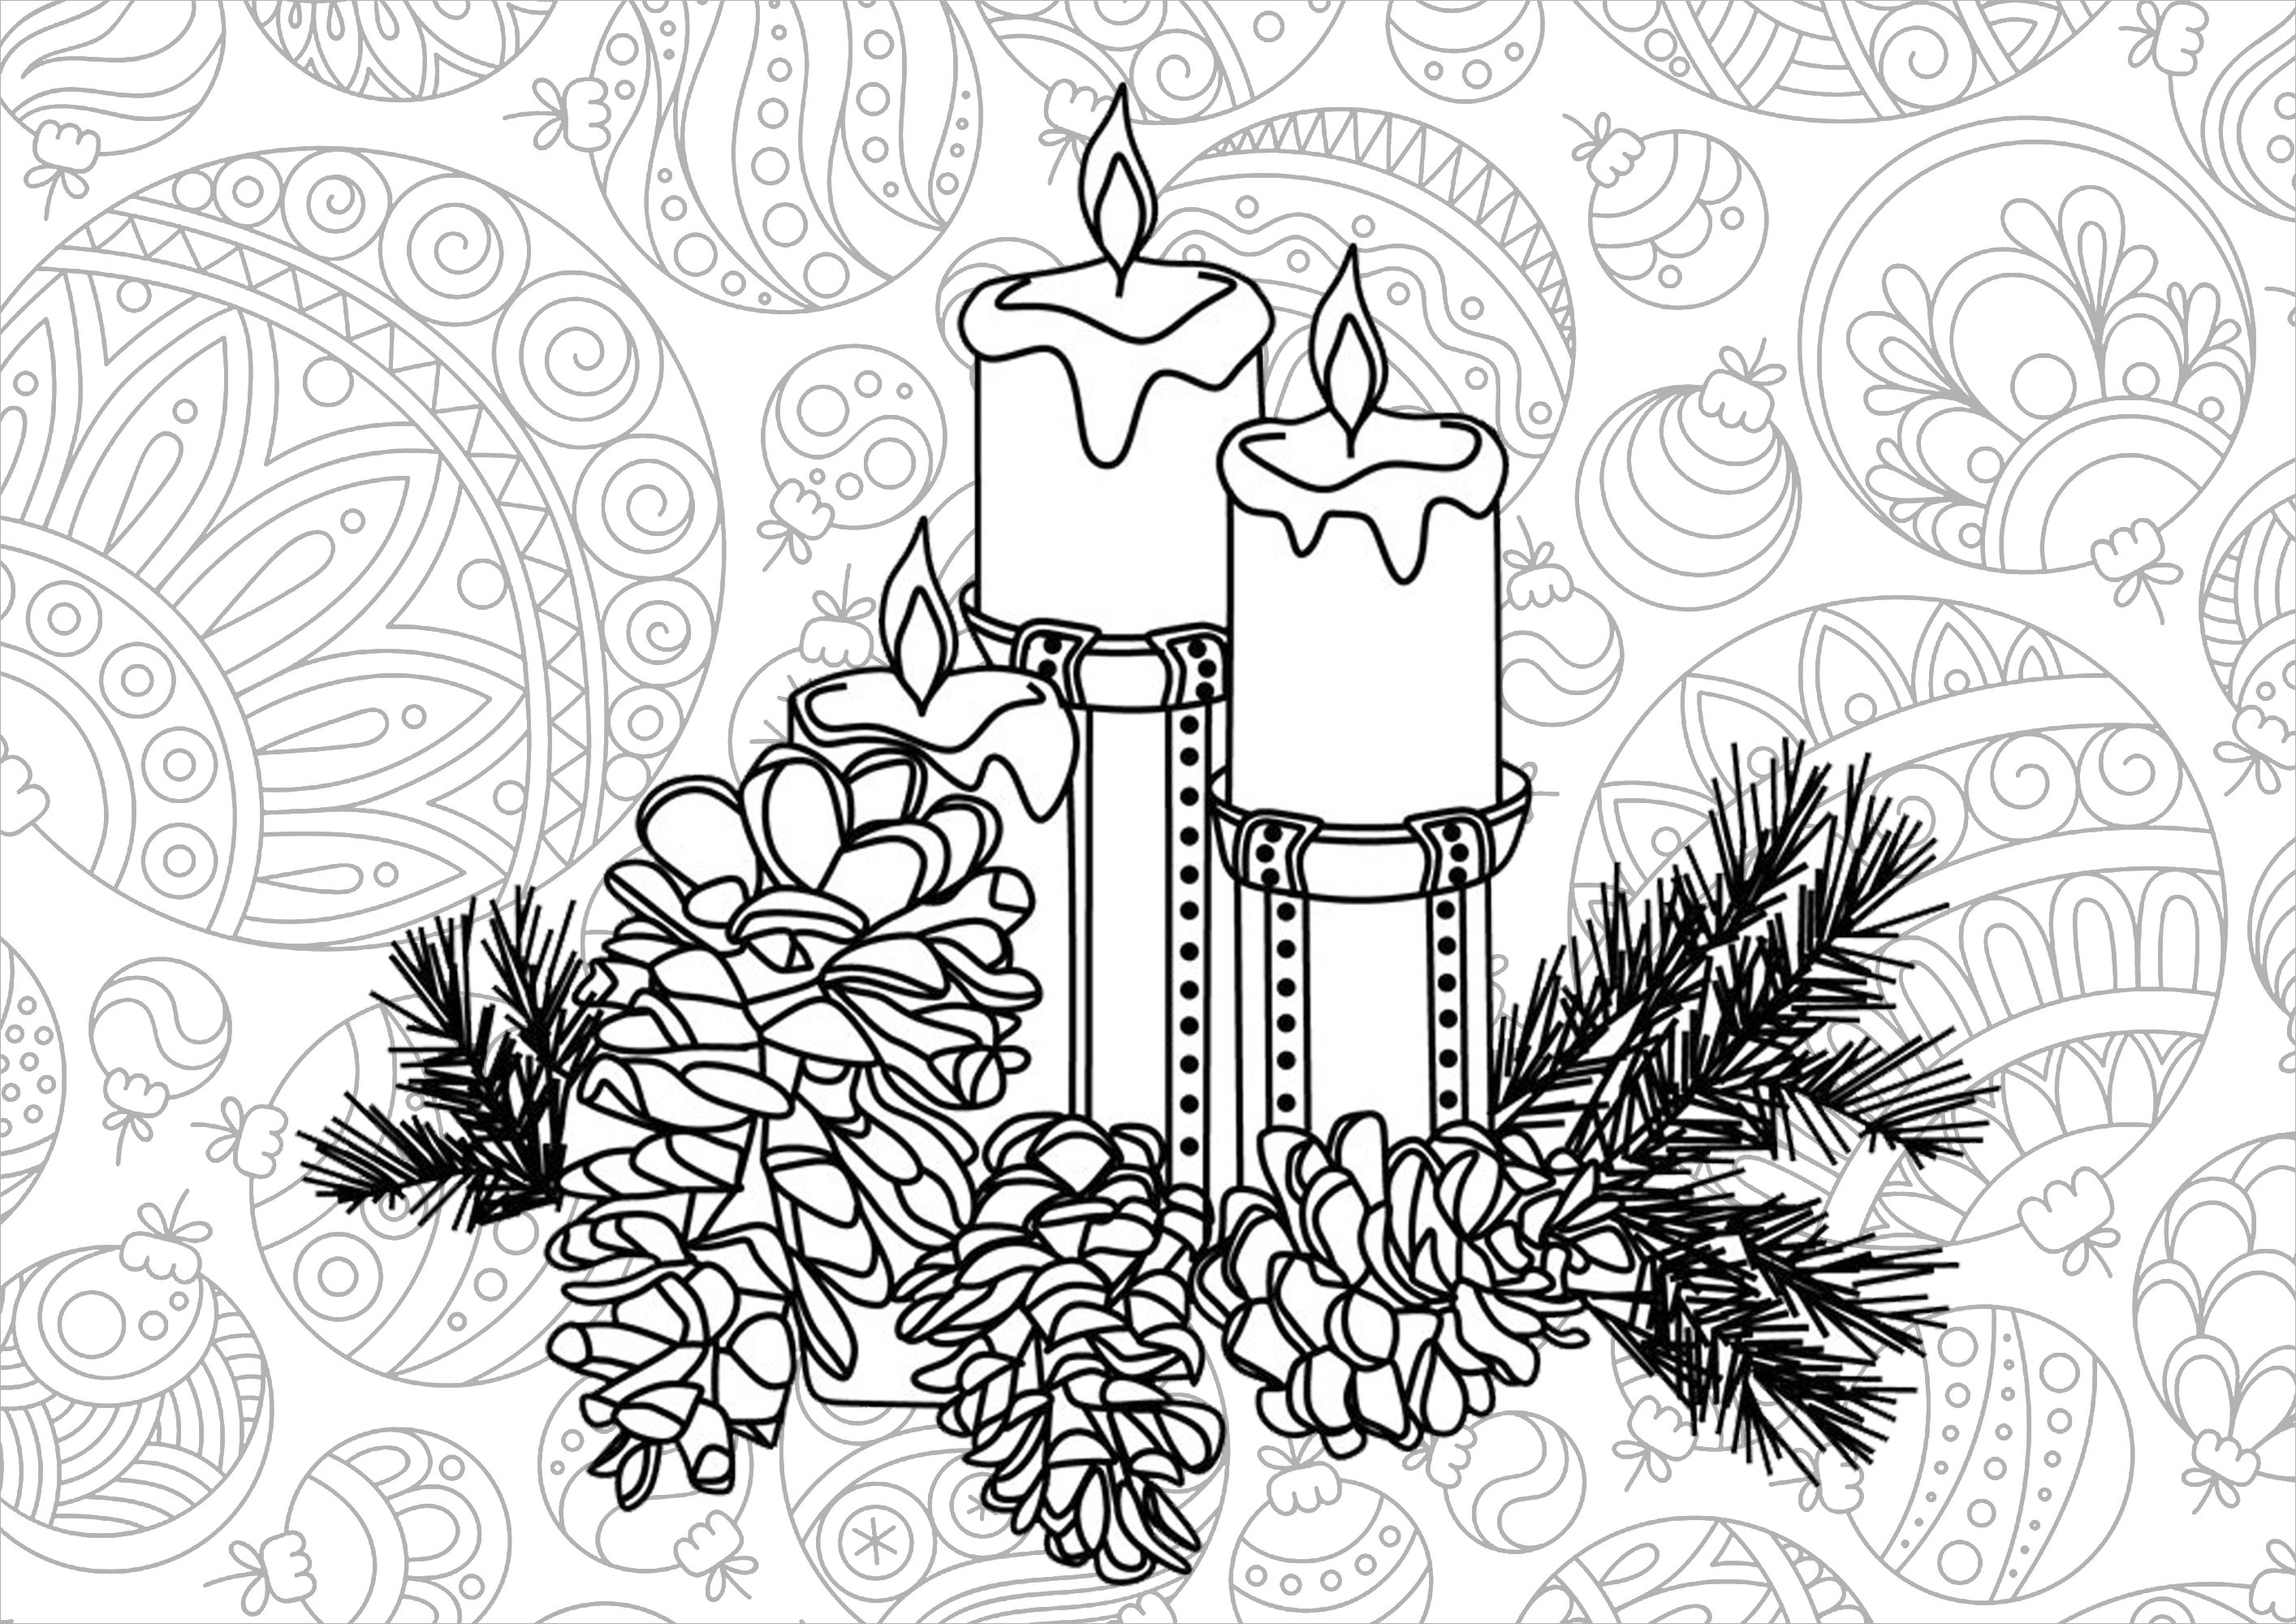 Coloriez ces jolies bougies et décorations de Noël.